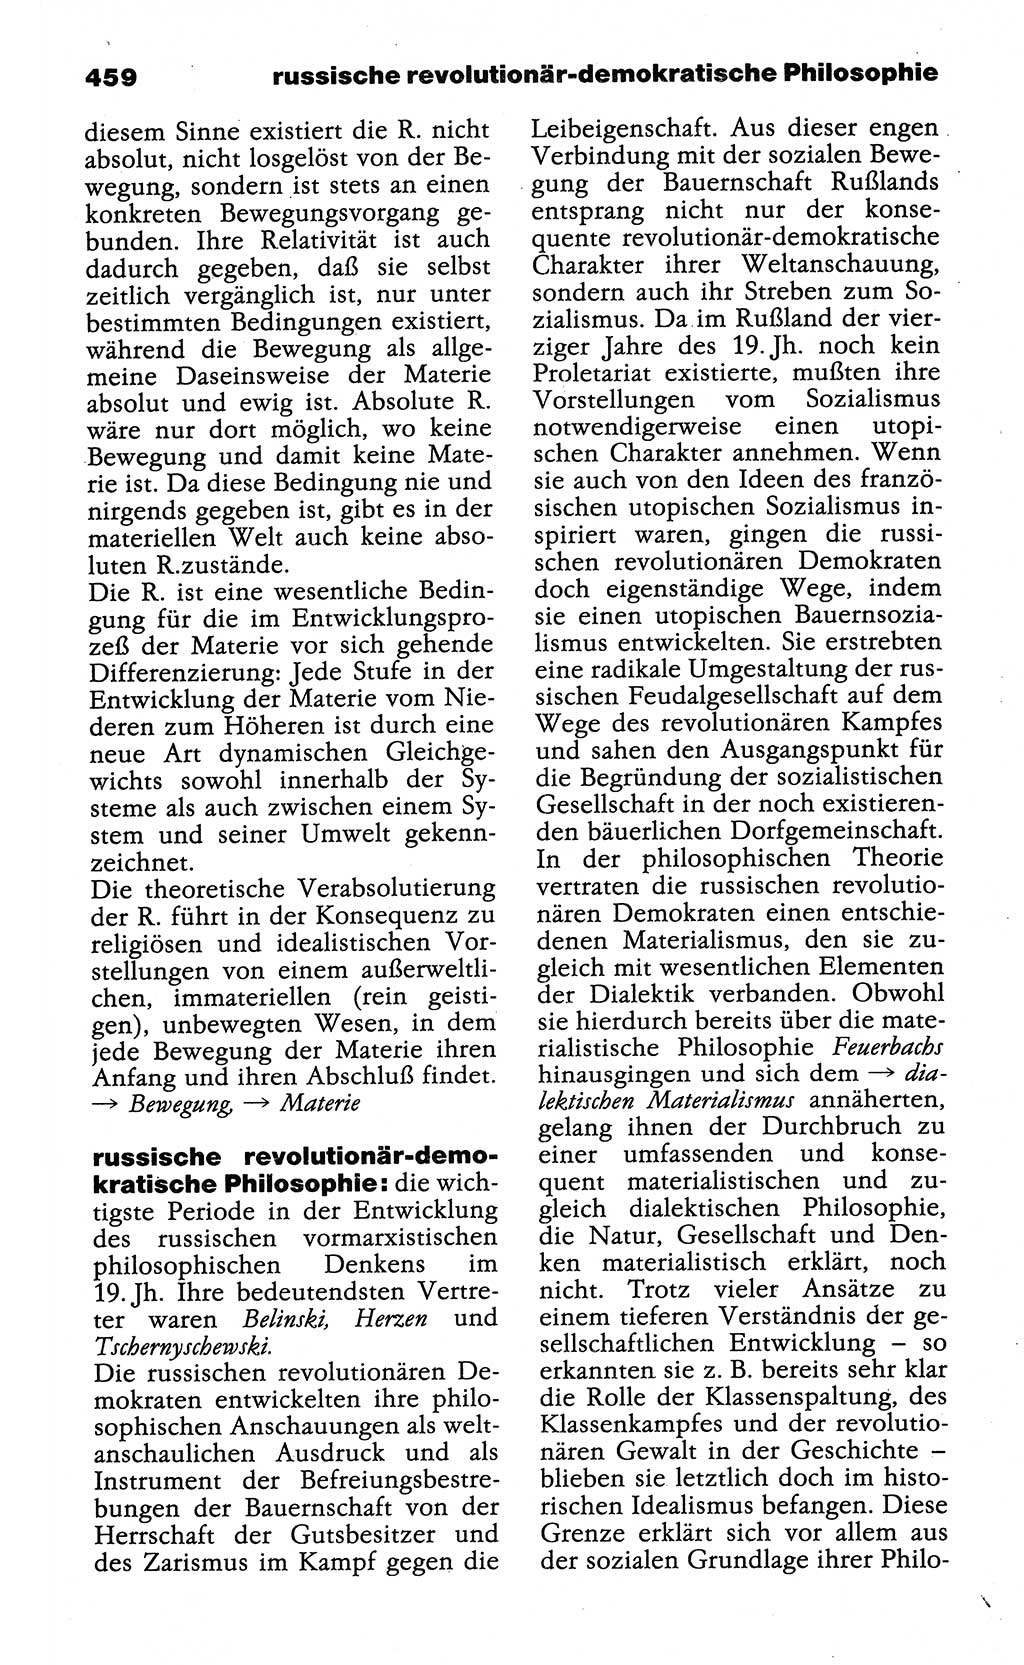 Wörterbuch der marxistisch-leninistischen Philosophie [Deutsche Demokratische Republik (DDR)] 1985, Seite 459 (Wb. ML Phil. DDR 1985, S. 459)